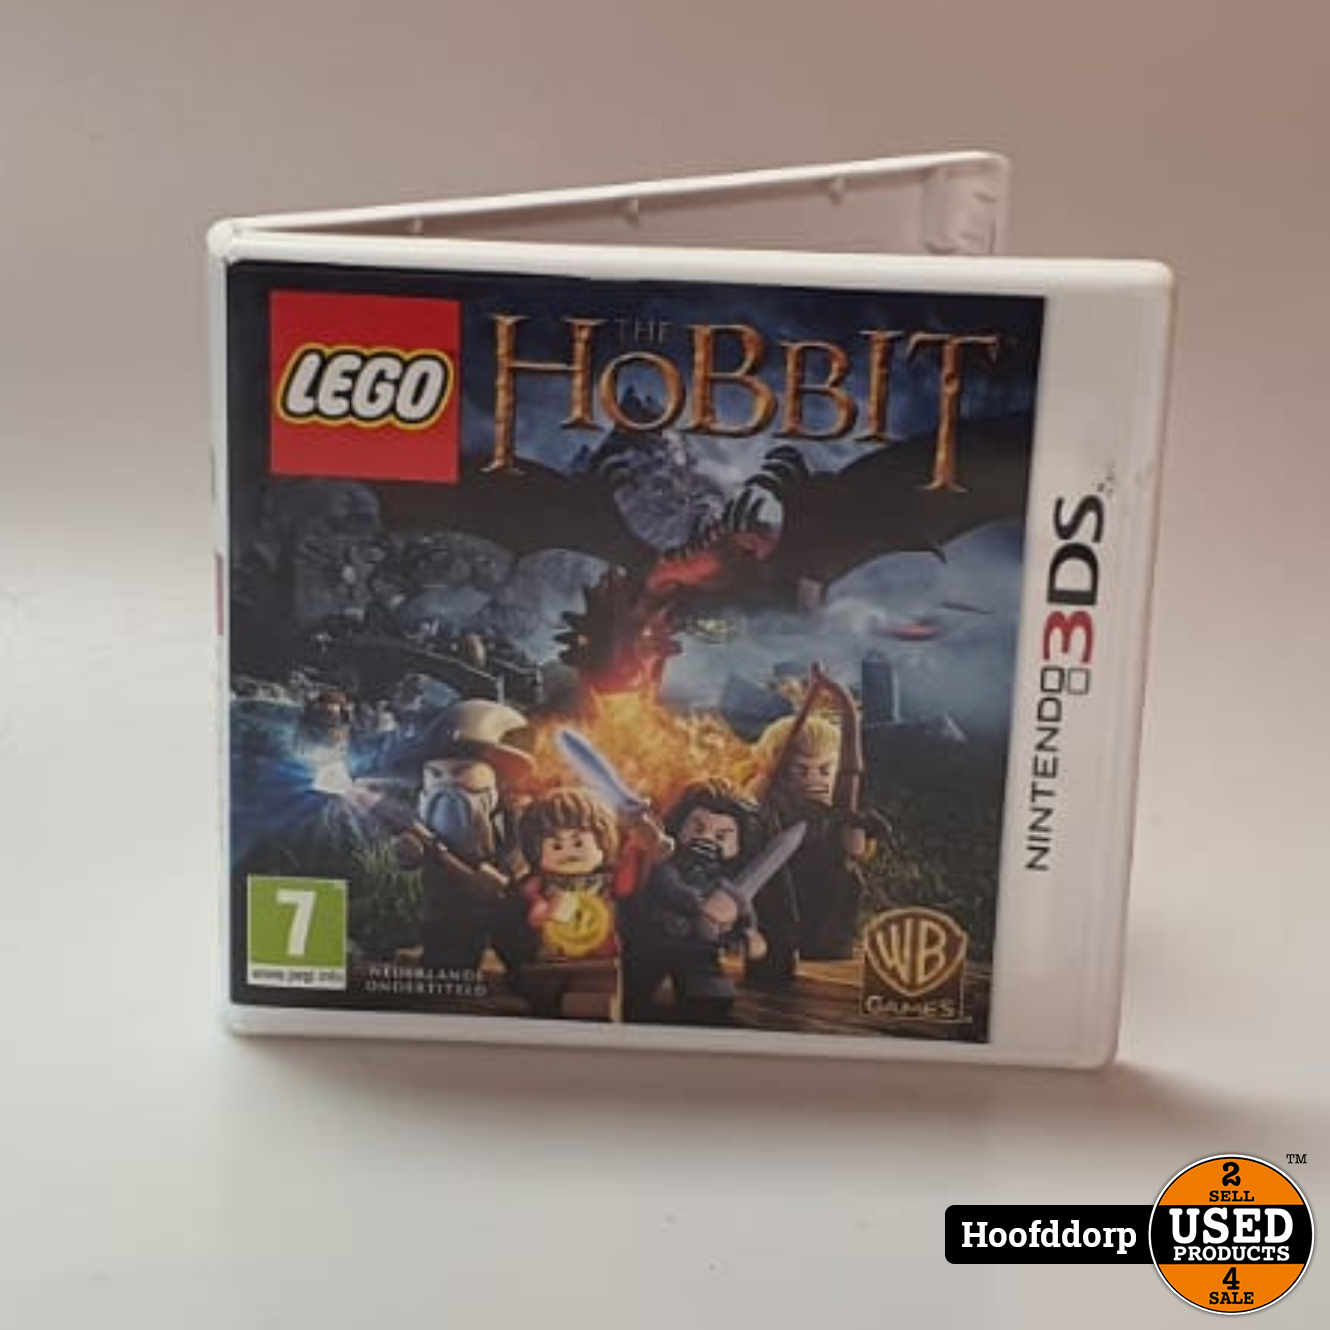 voorspelling Concreet open haard Nintendo 3DS Game : The Hobbit - Used Products Hoofddorp